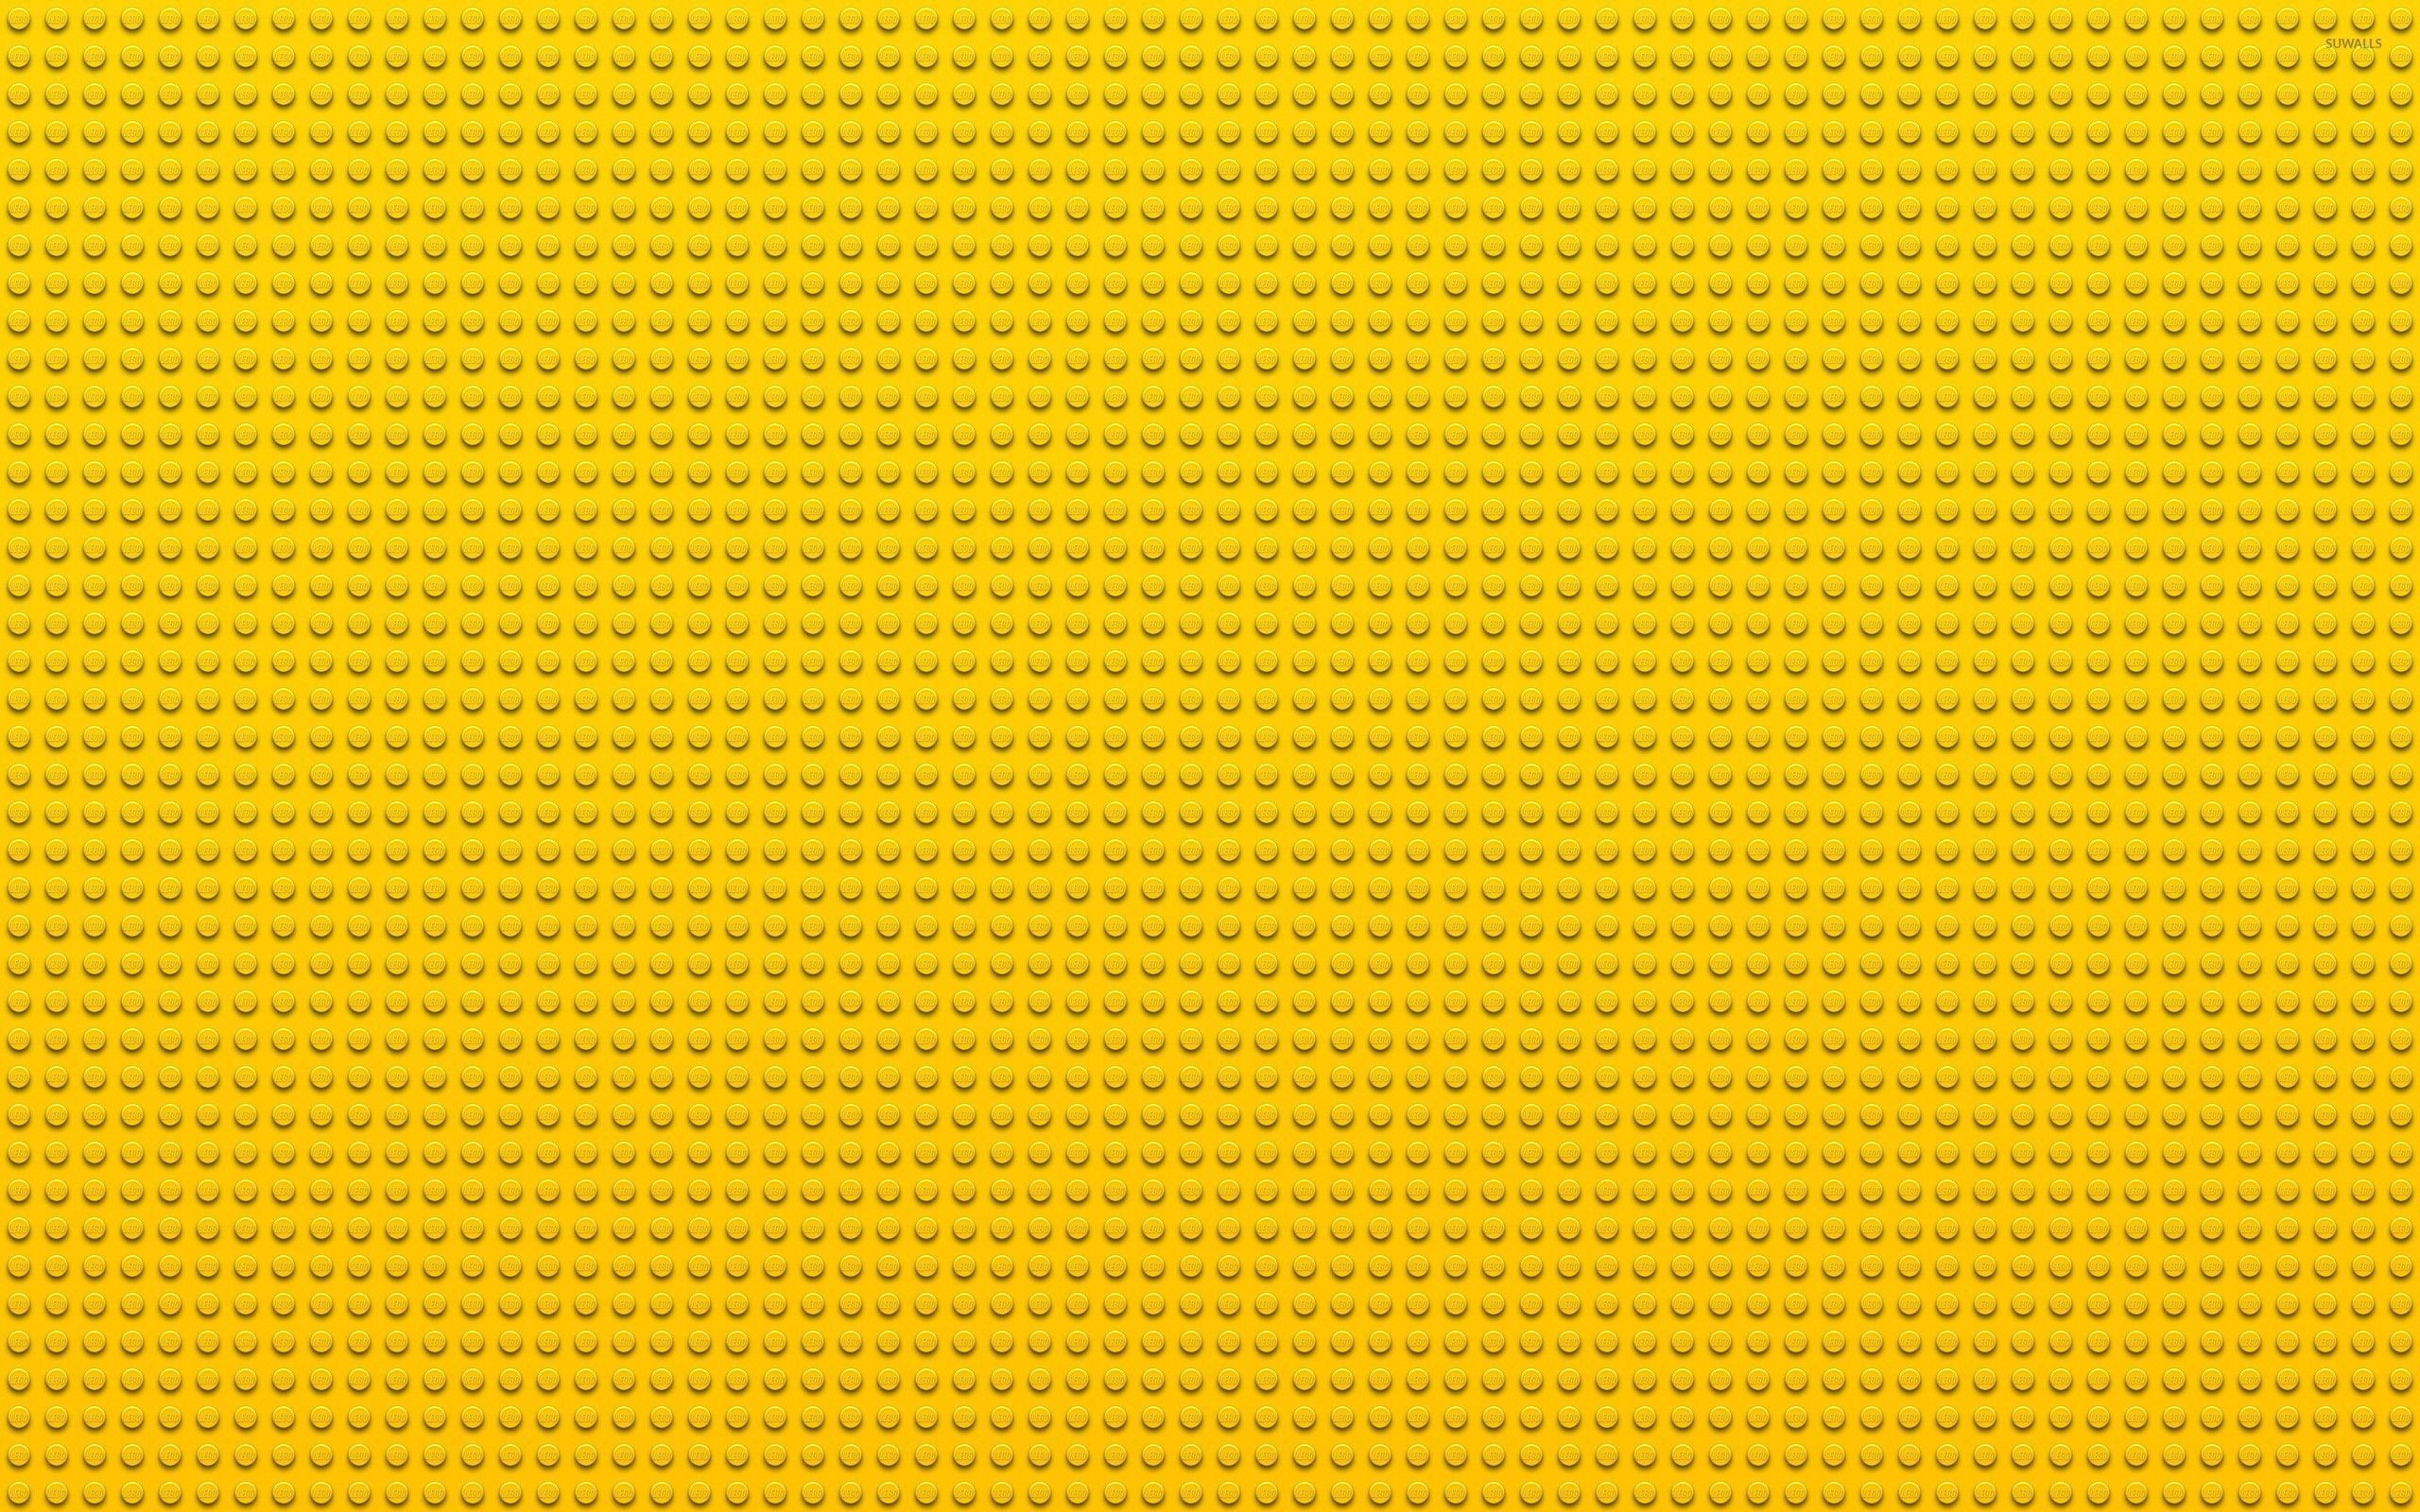 Lego wallpaperDownload free cool background for desktop